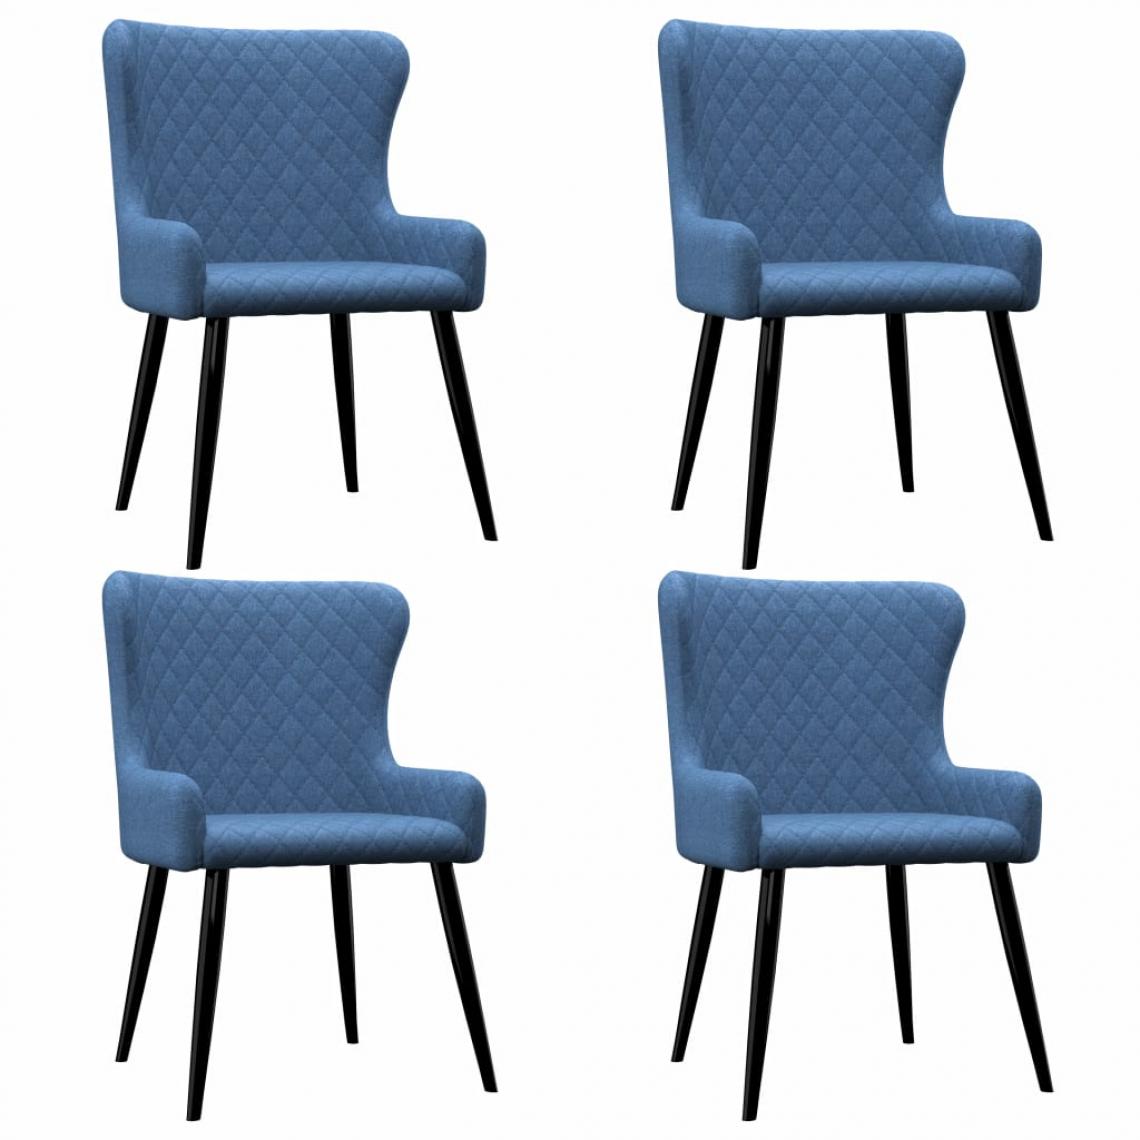 Decoshop26 - Lot de 4 chaises de salle à manger cuisine design moderne tissu bleu CDS021300 - Chaises